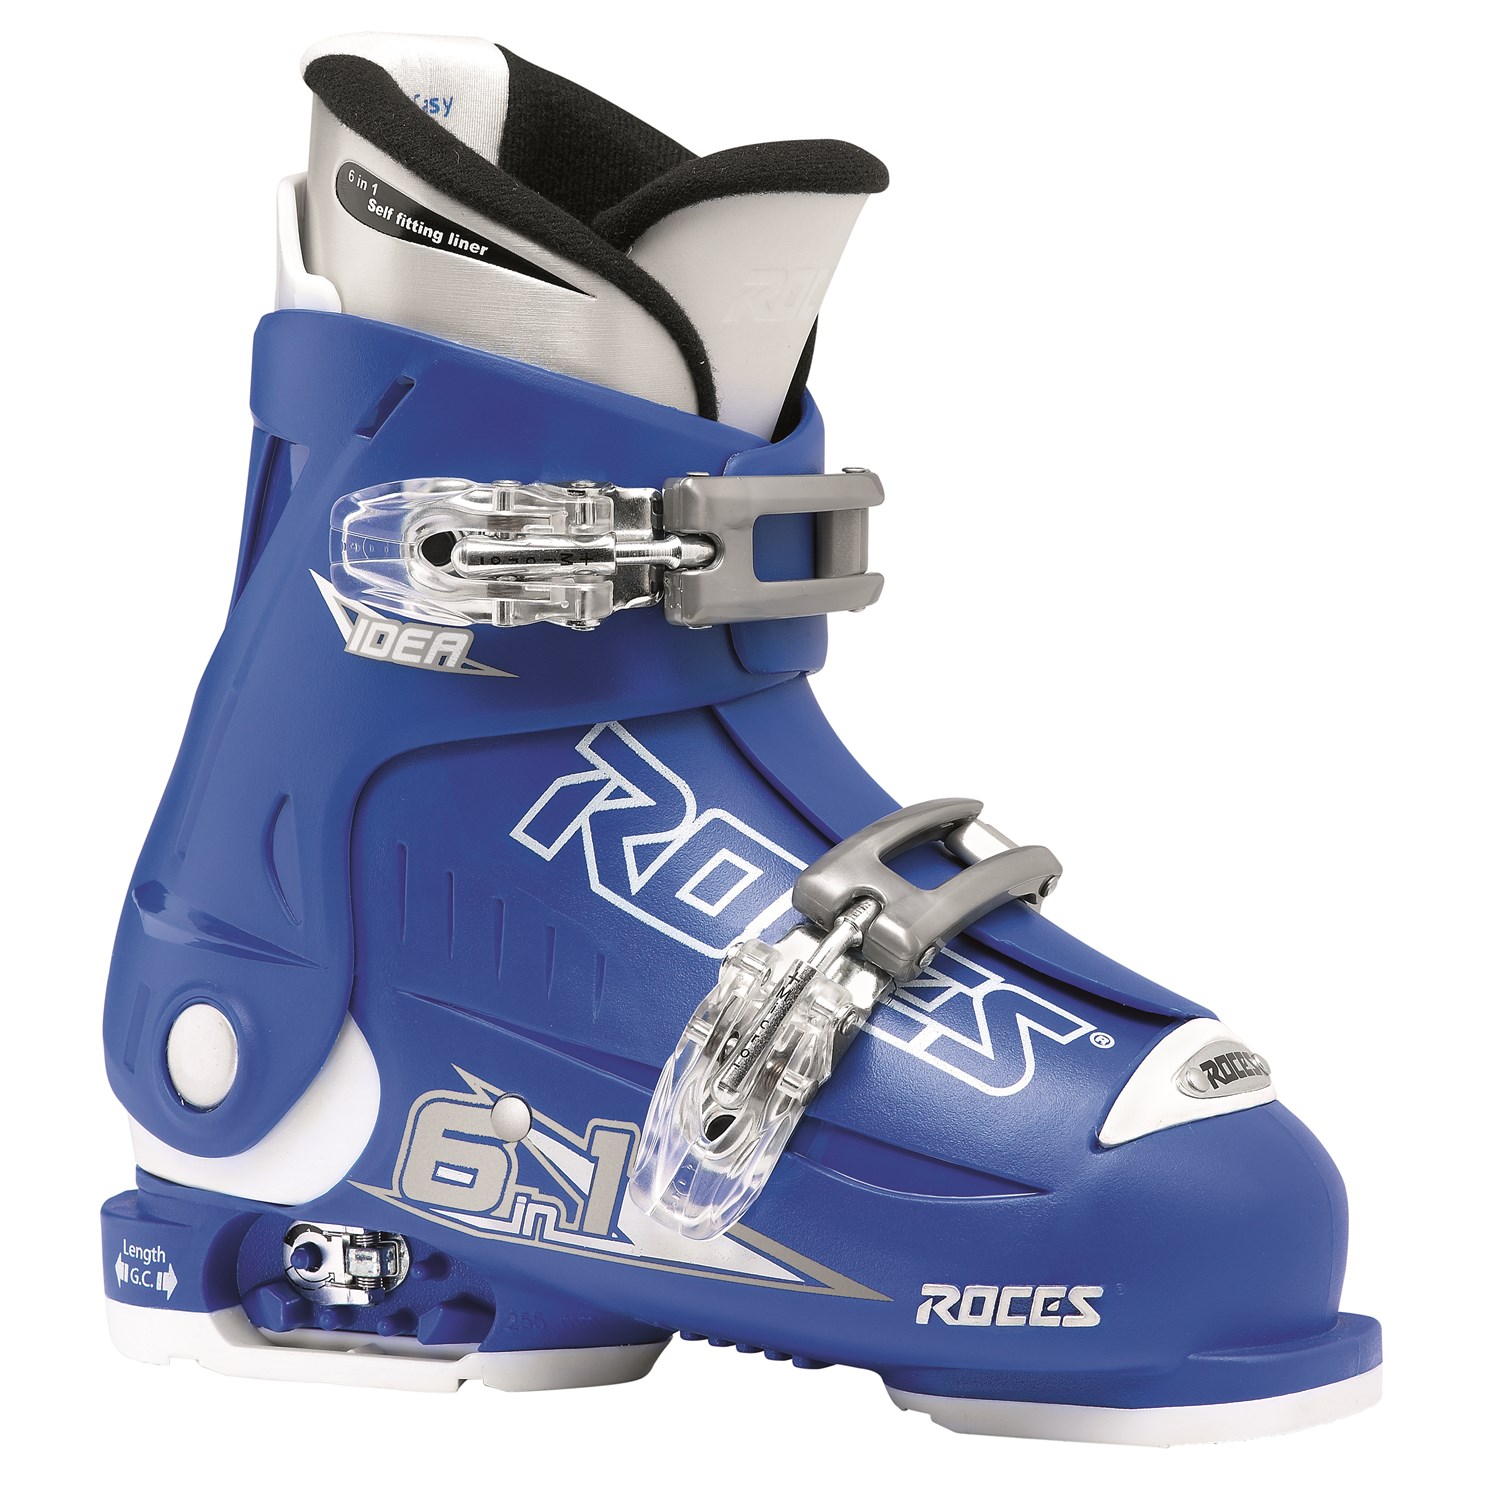 18.5 ski boot size